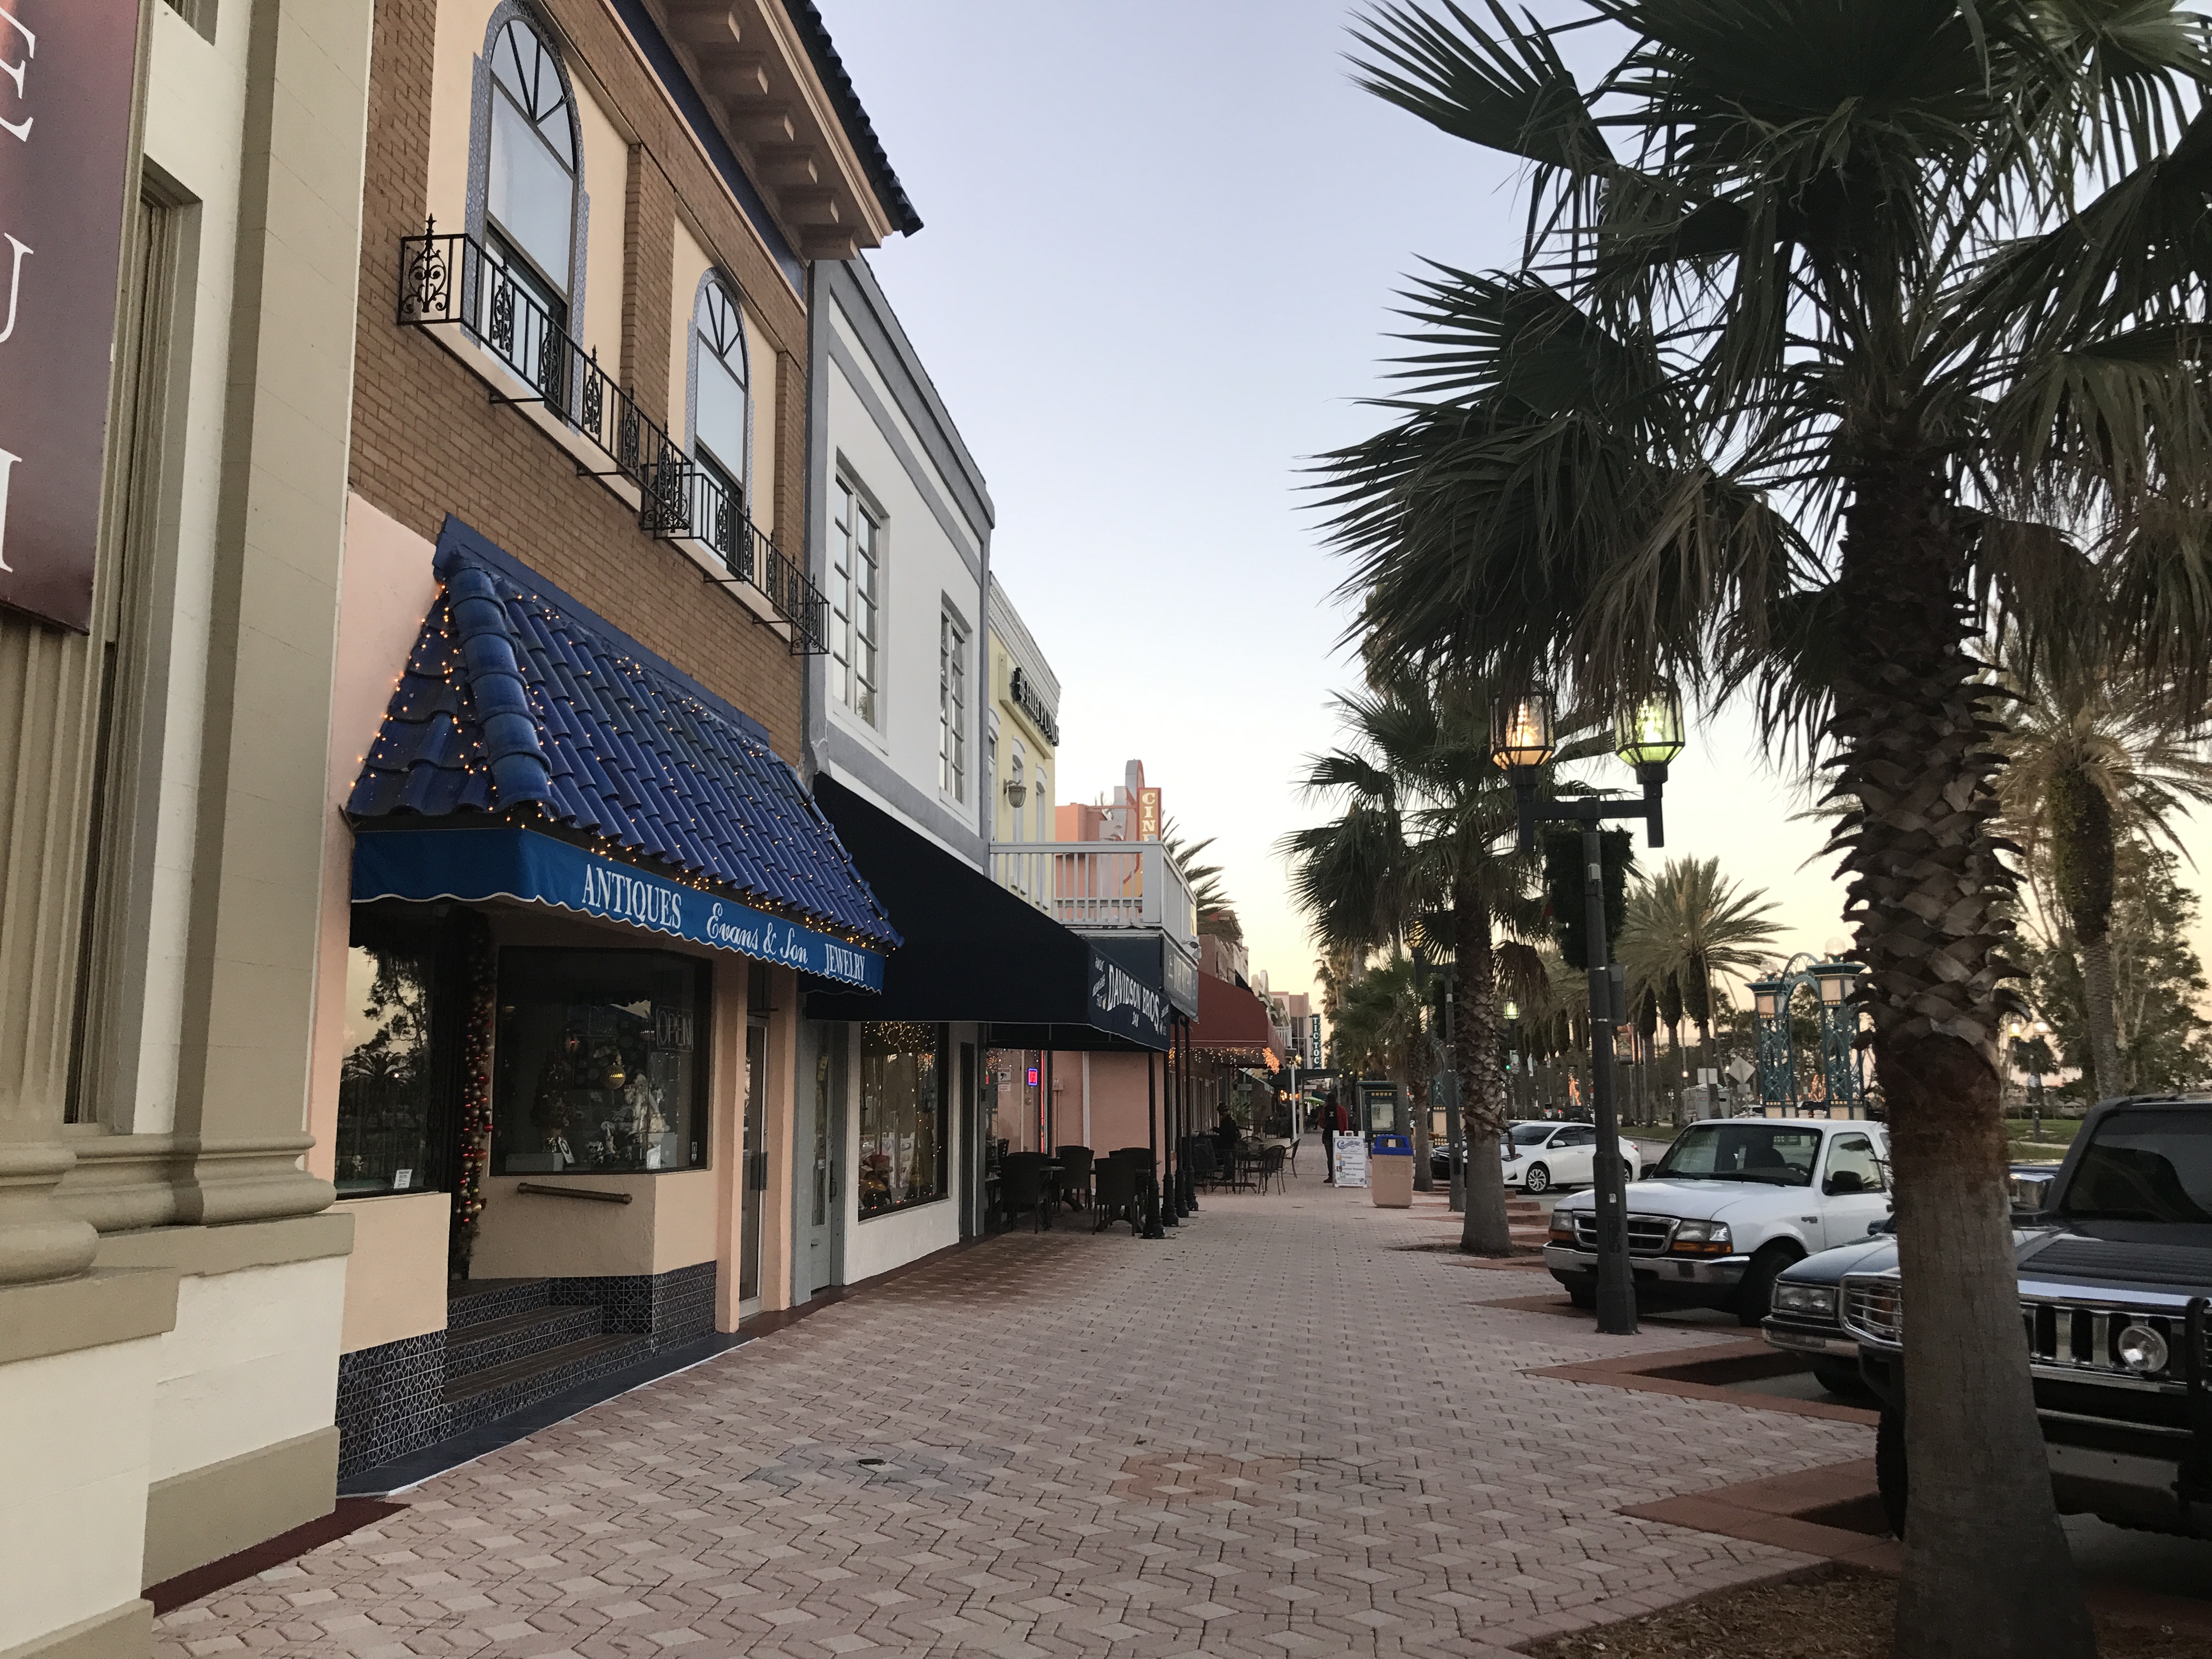 Old Daytona shopping area